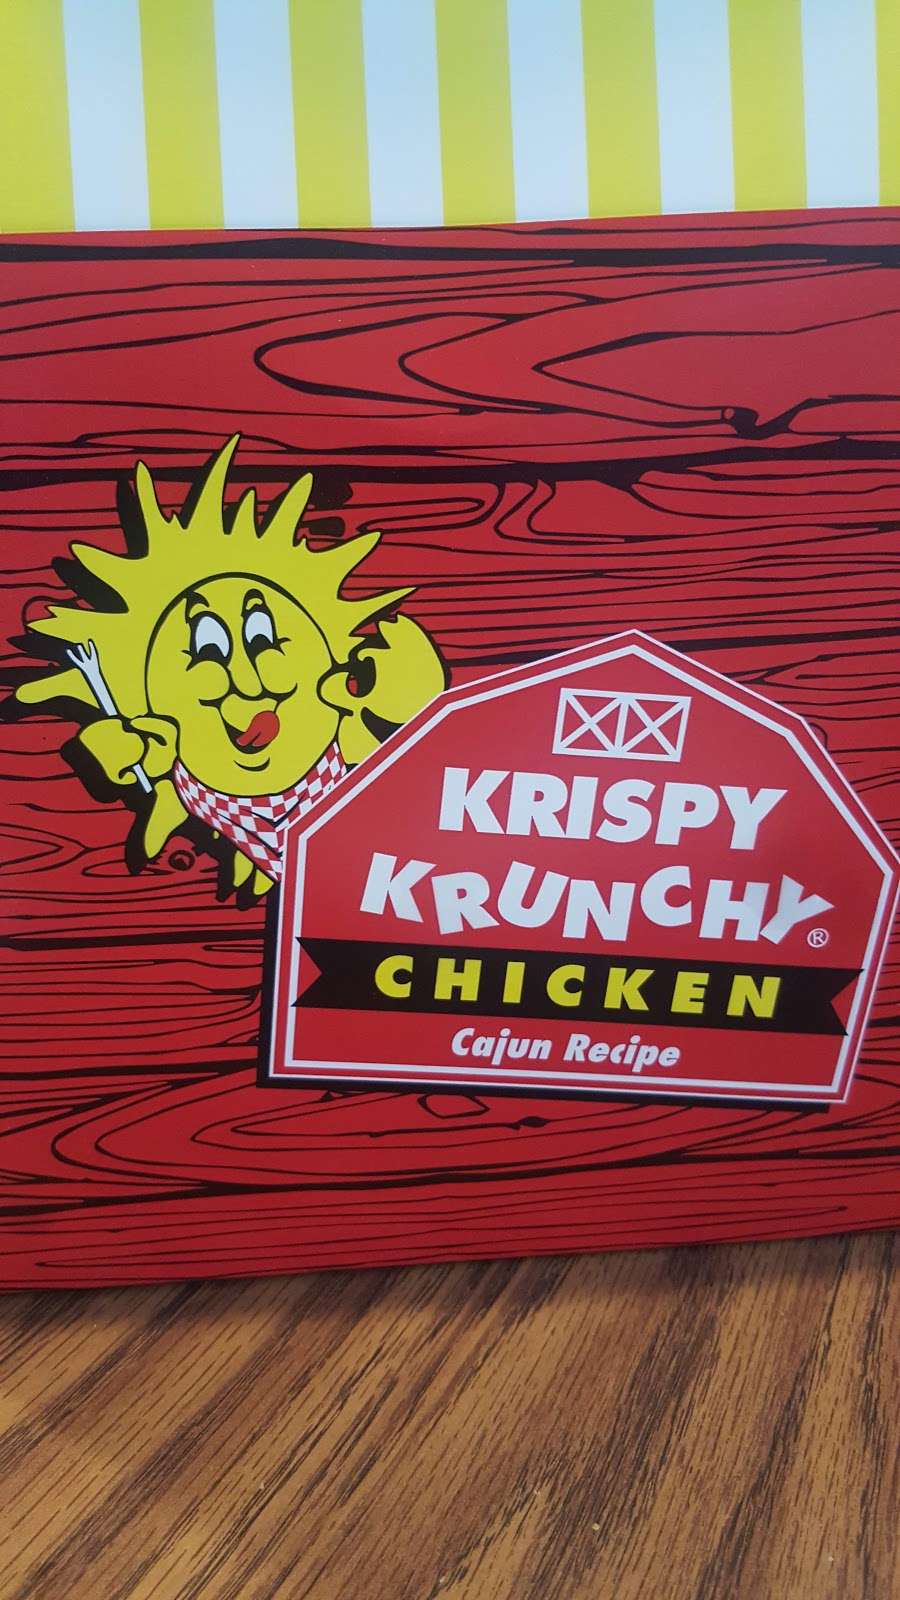 Krispy Krunchy Chicken | 505 Skyline Dr, Daly City, CA 94015 | Phone: (650) 992-2500